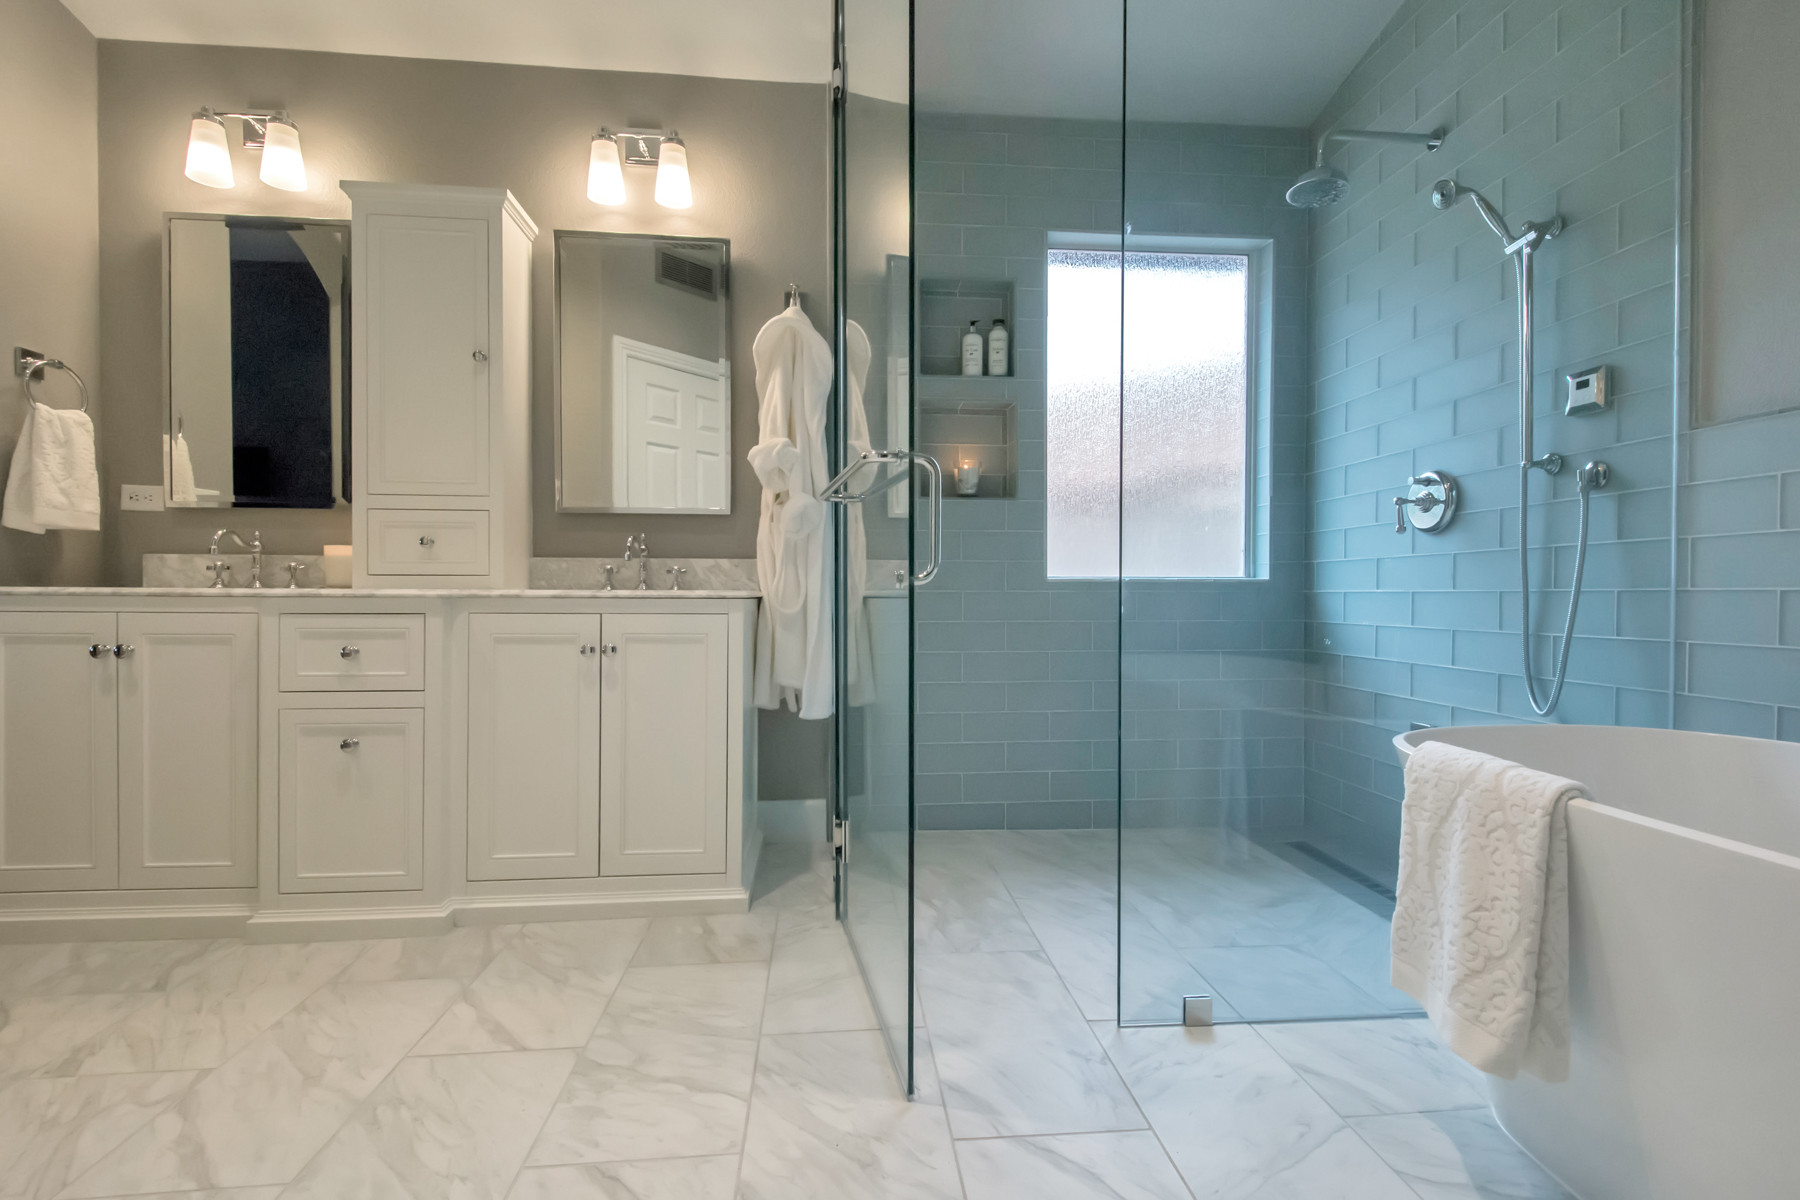 Steam Shower In Master Bathroom Ideas Photos Houzz